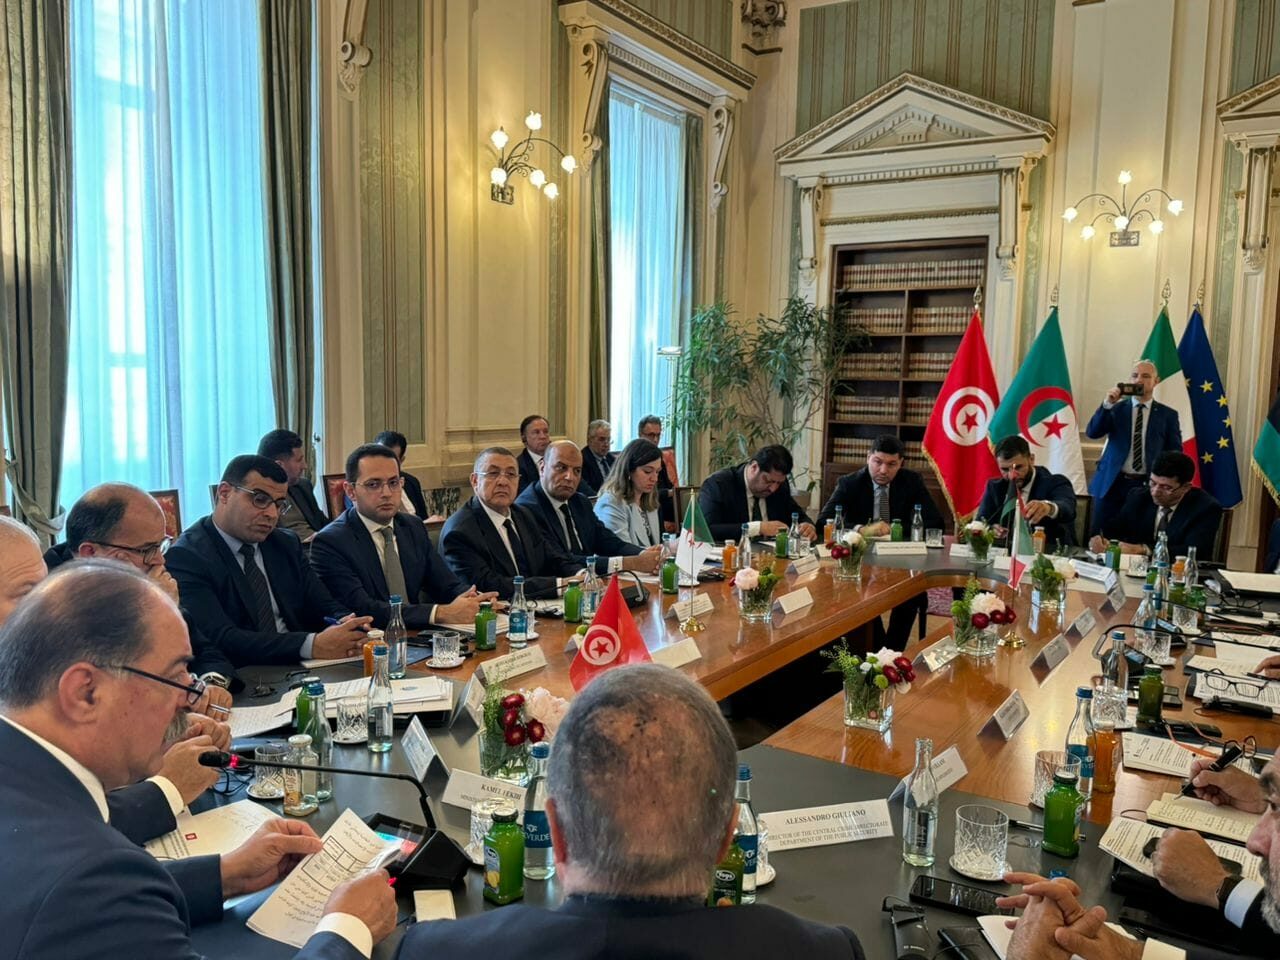 تونس: “توحيد الرّؤى لمُكافحة الهجرة غير النظاميّة” .. وزير الدّاخليّة يشارك في اجتماع تنسيقي دولي بالعاصمة الإيطالية